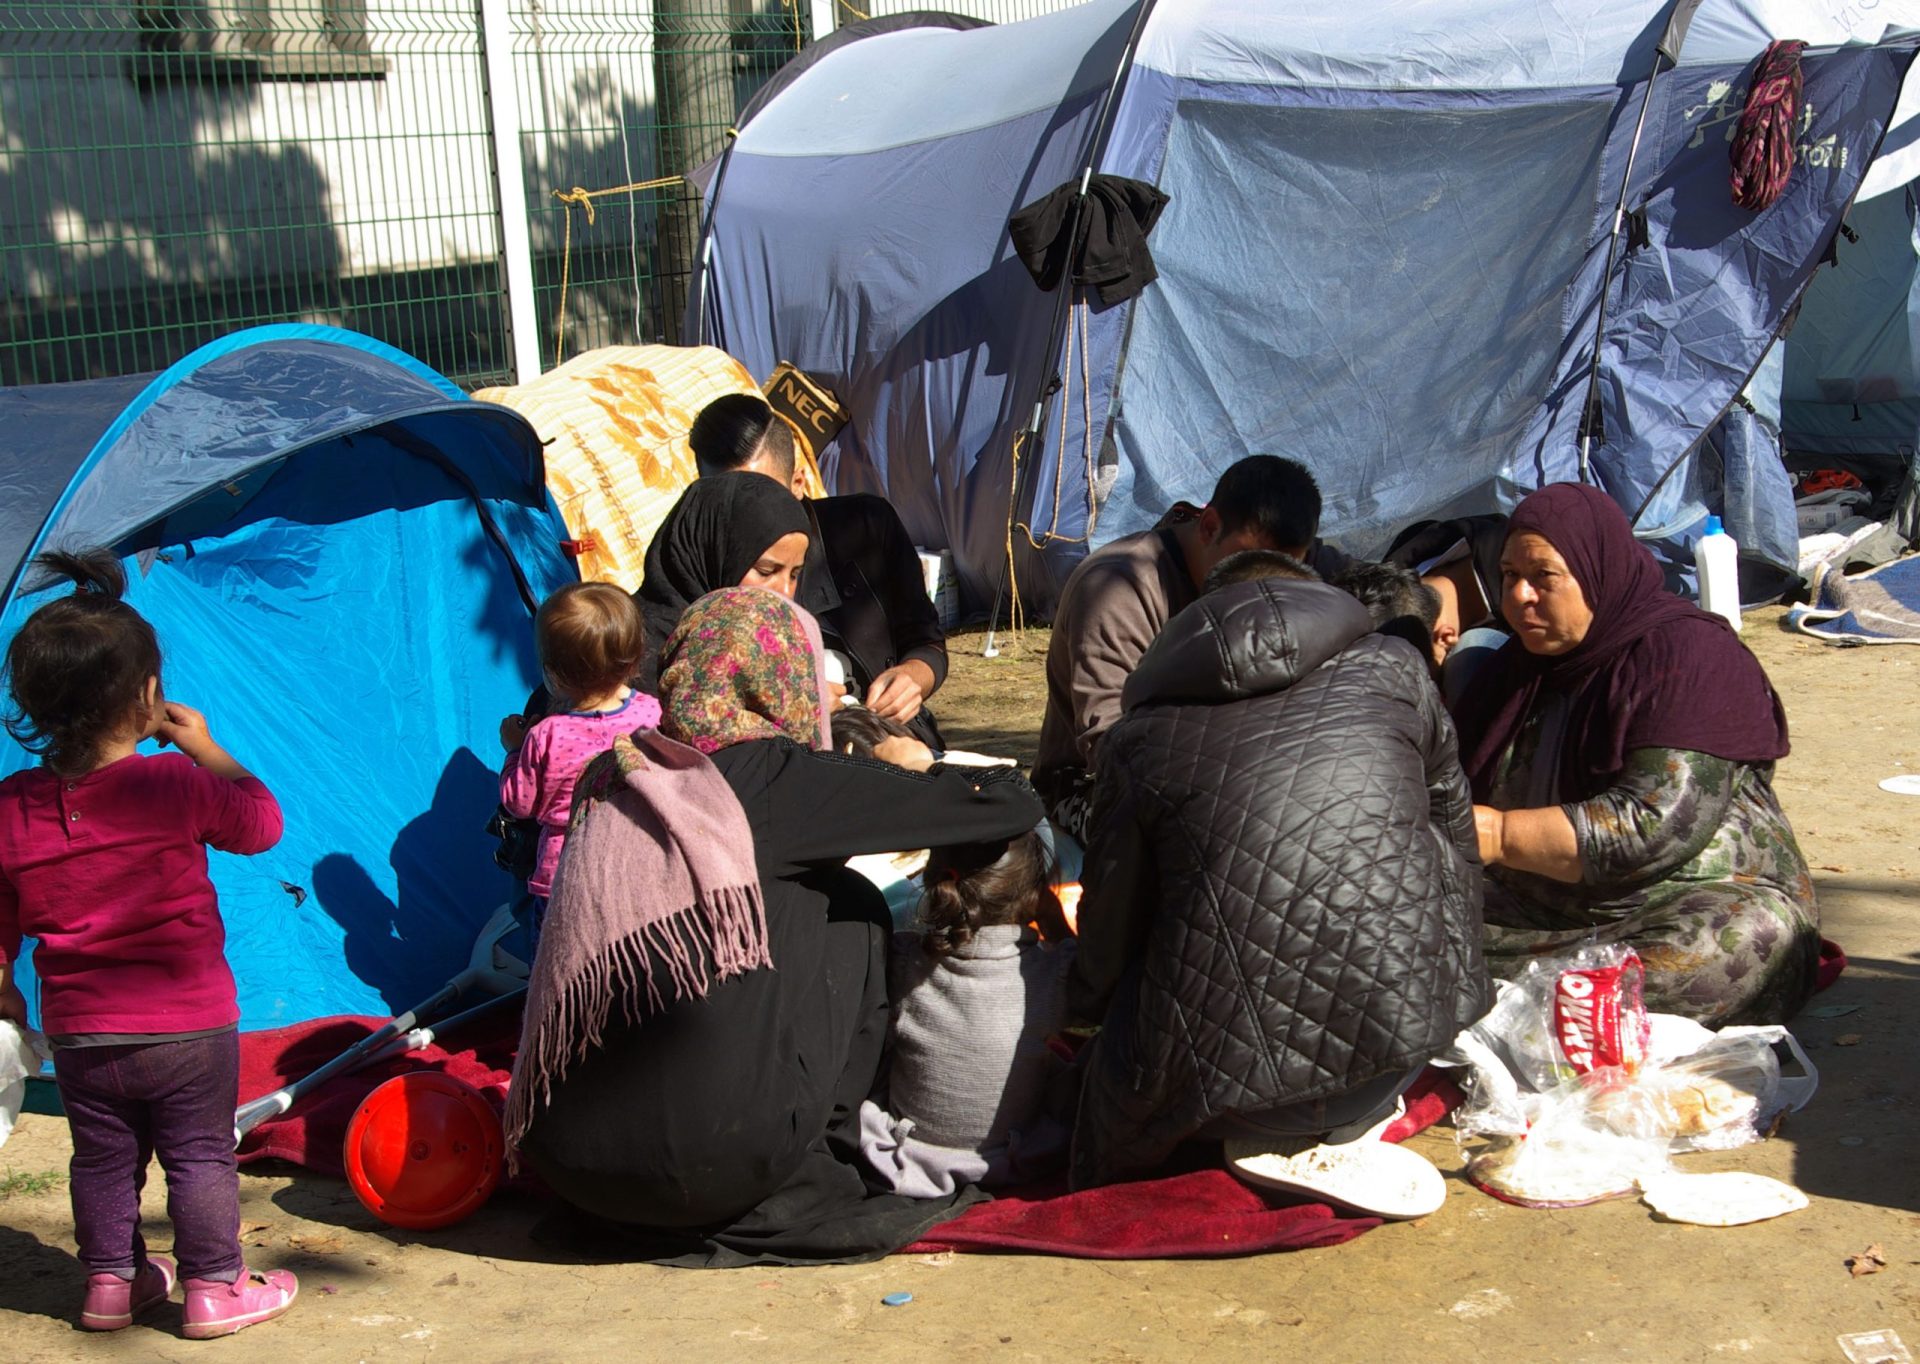 Catorze migrantes encontrados num camião frigorífico em Calais